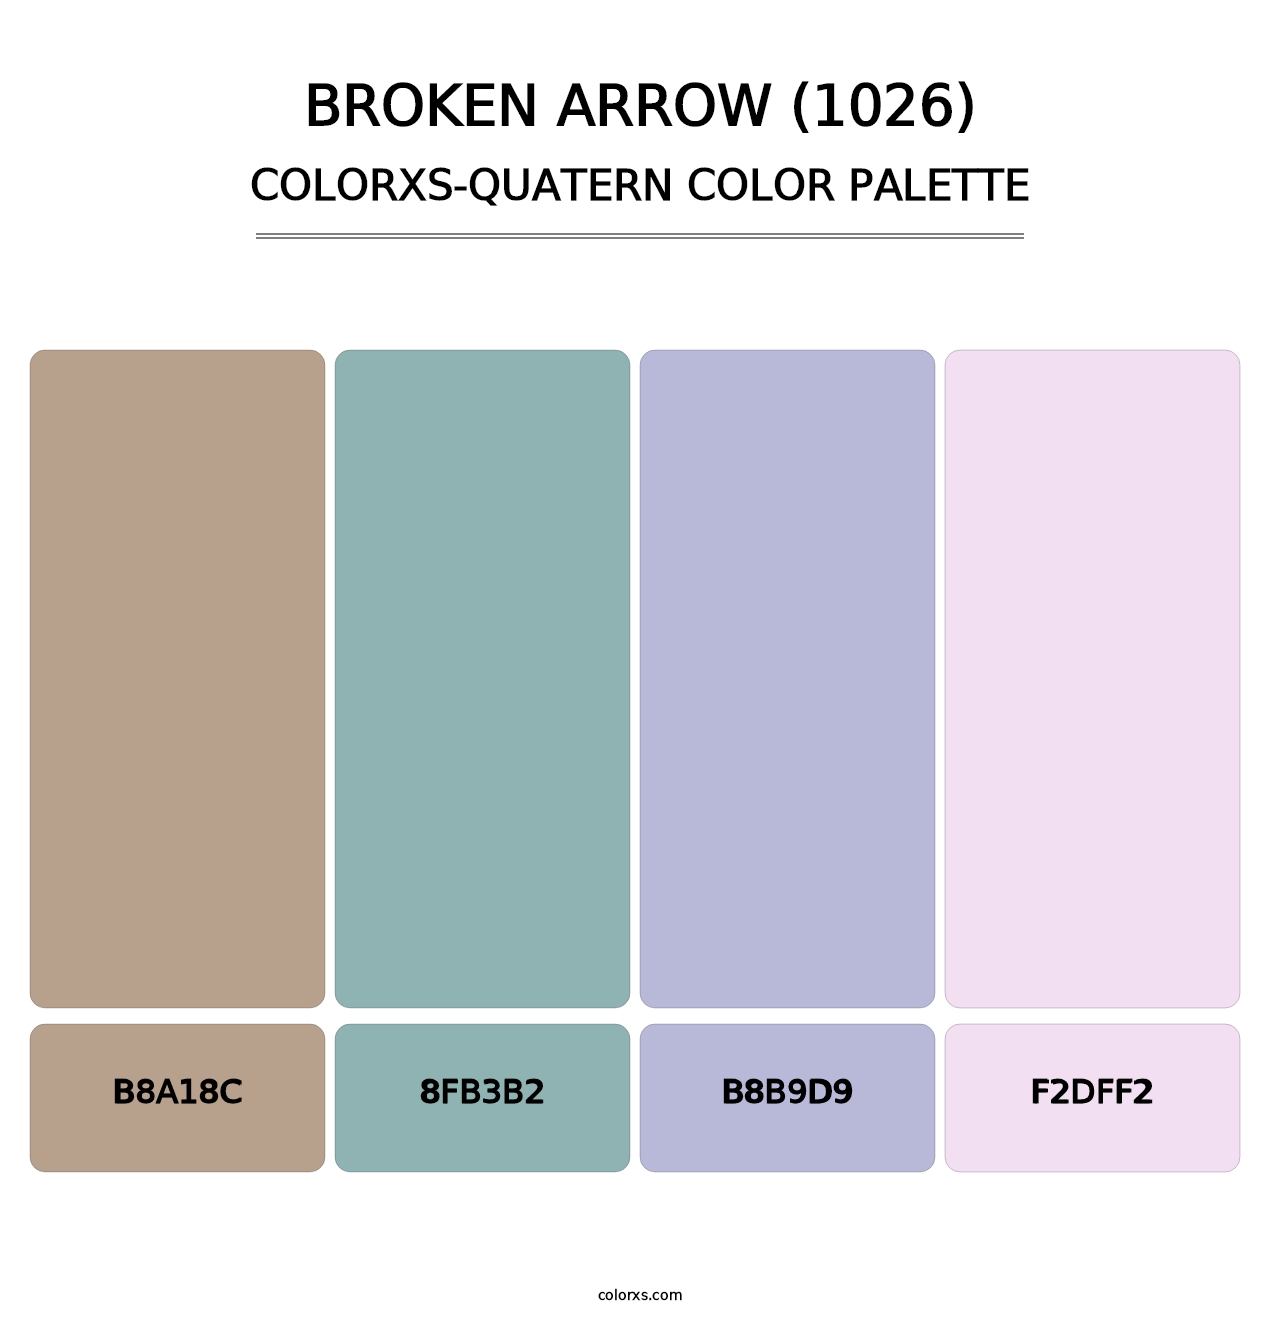 Broken Arrow (1026) - Colorxs Quatern Palette